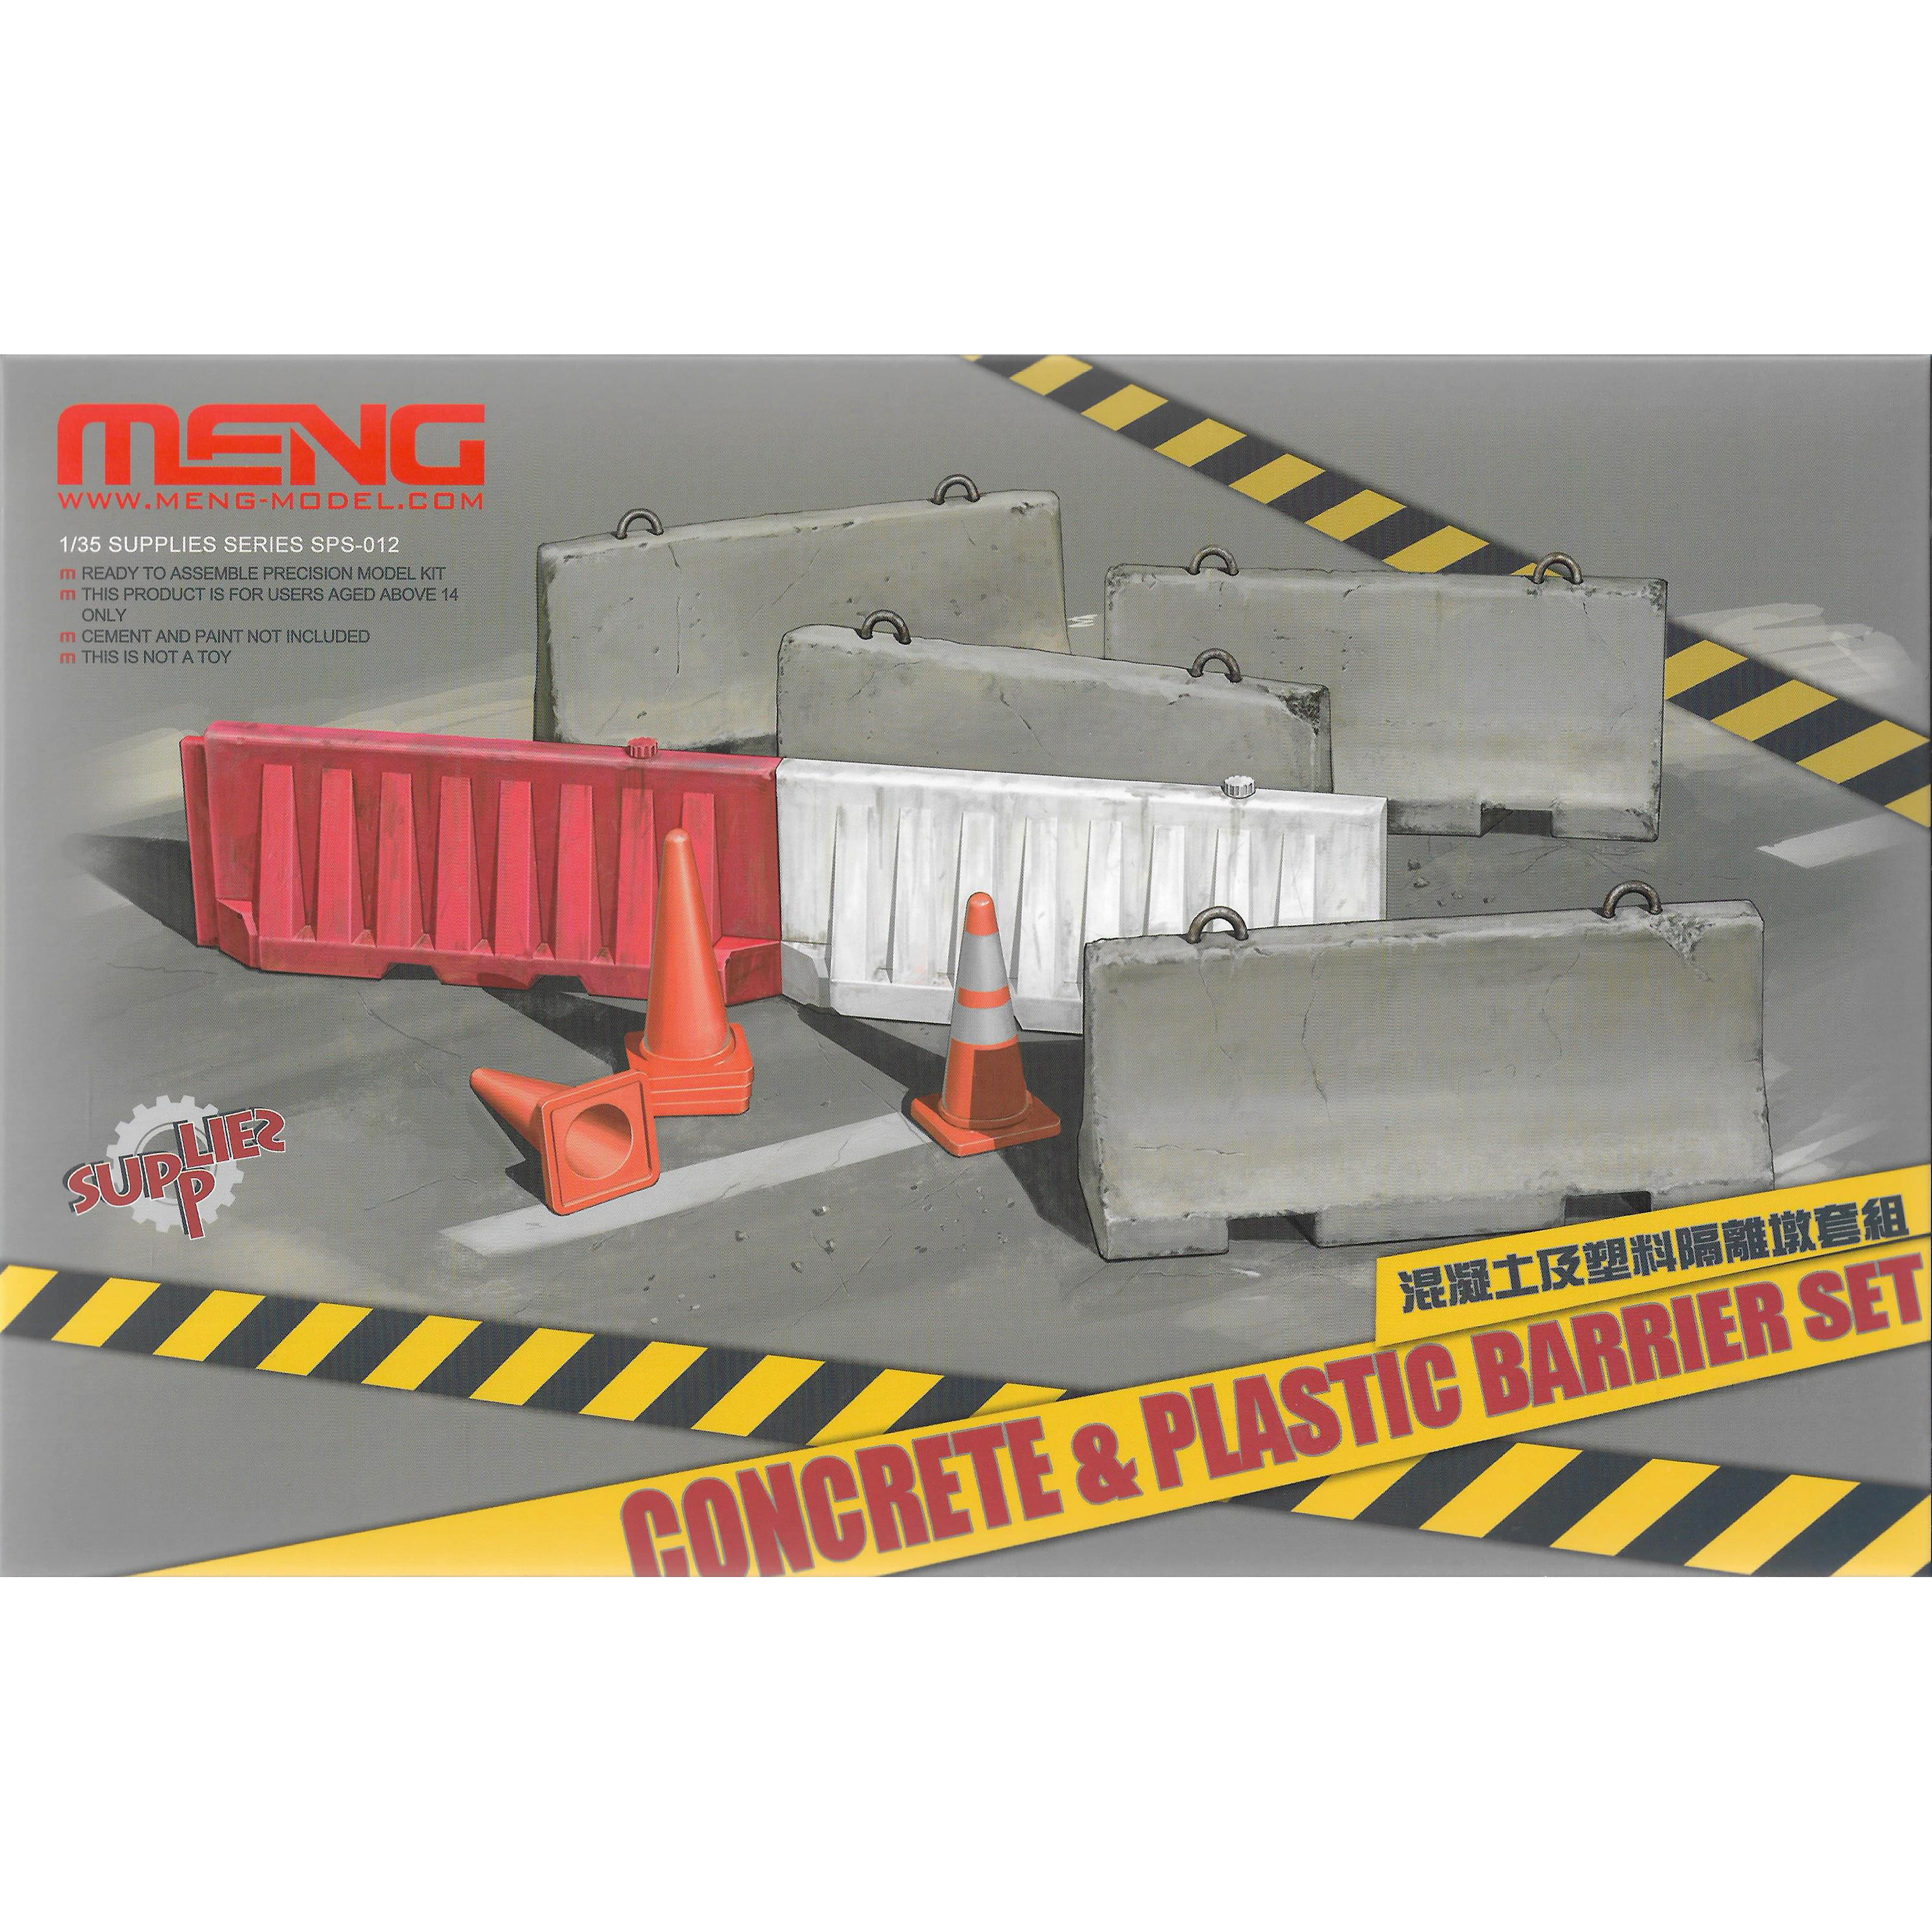 SPS-012 Meng 1/35 Concrete & Plastic Barrier Set